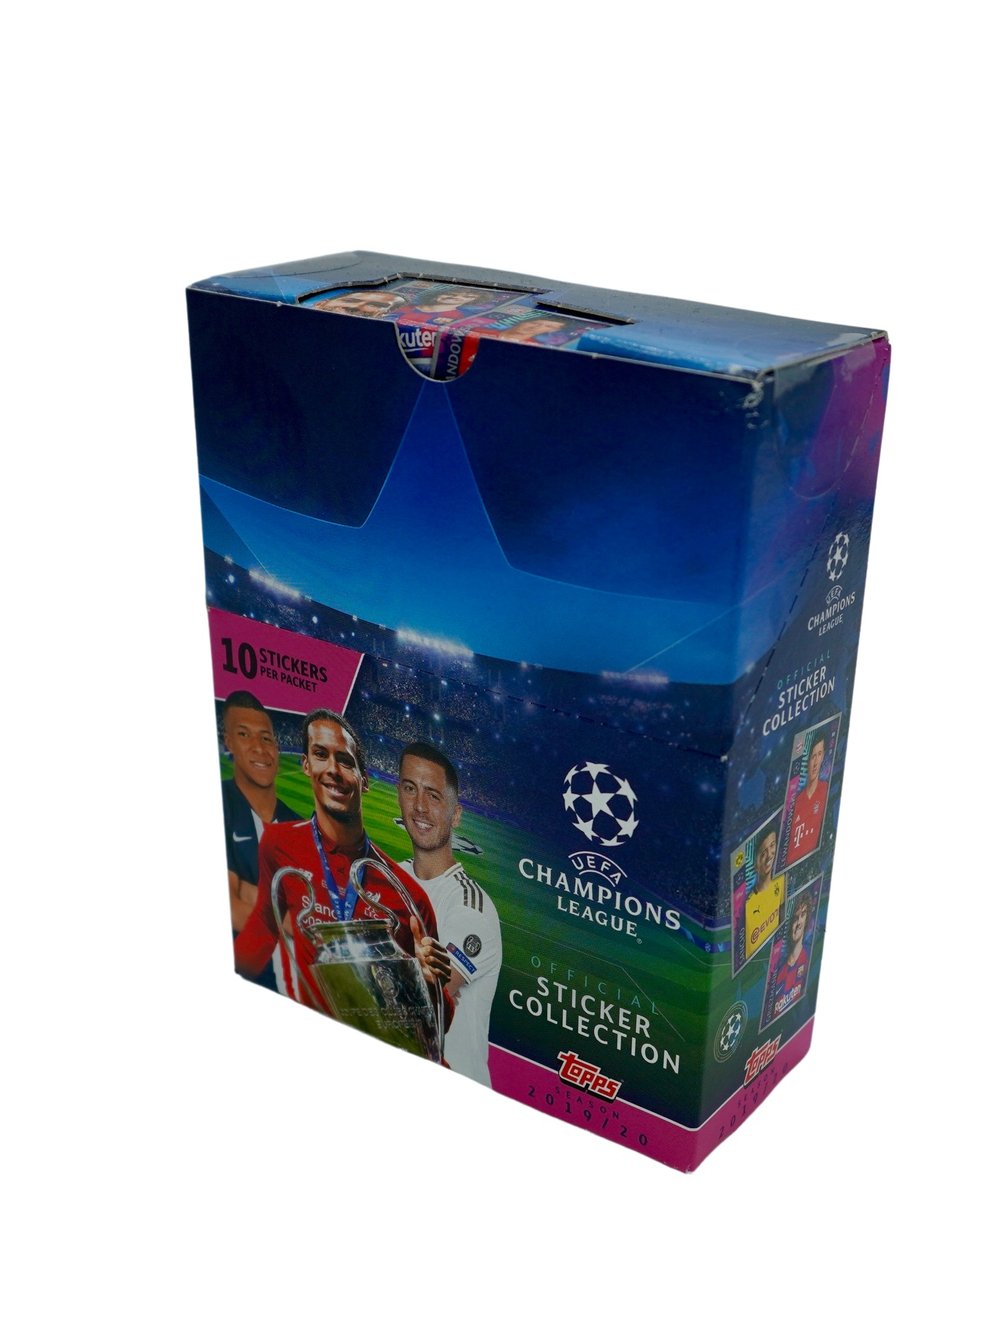 Figurinhas UEFA Champions League 2019/20 - lote com 10 envelopes